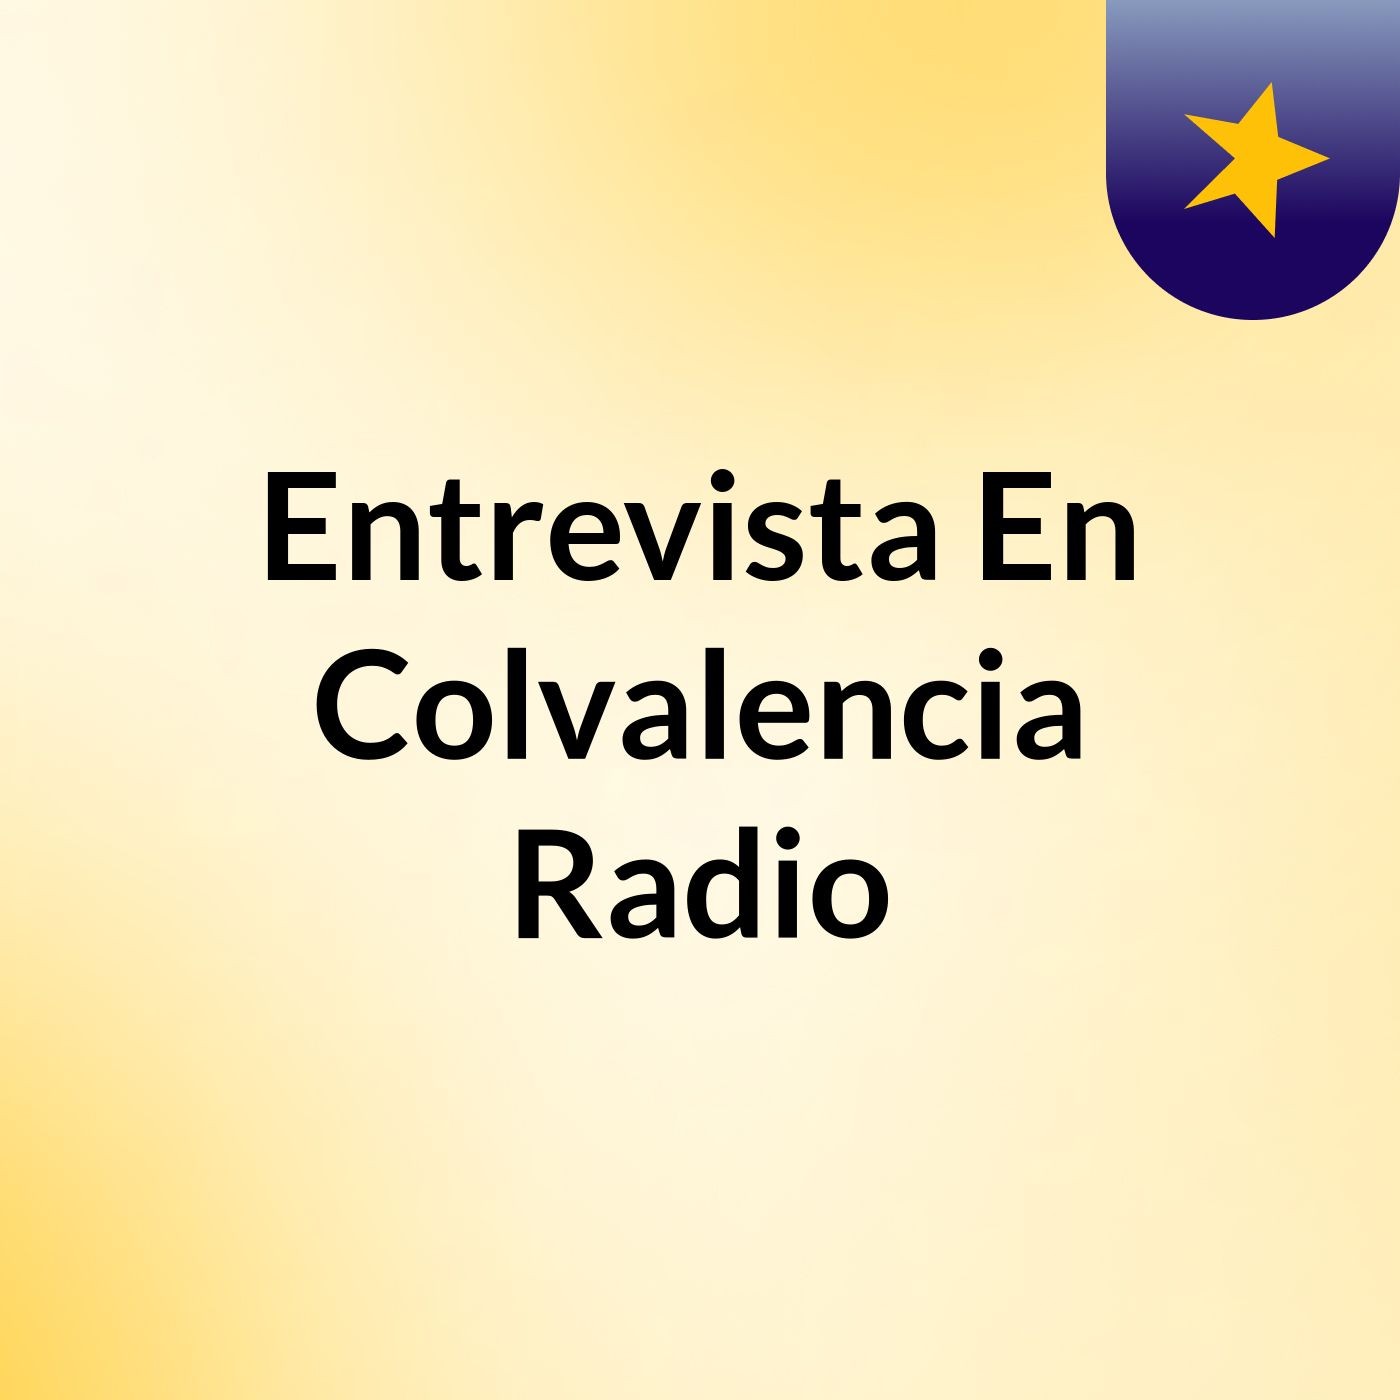 Entrevista En Colvalencia Radio